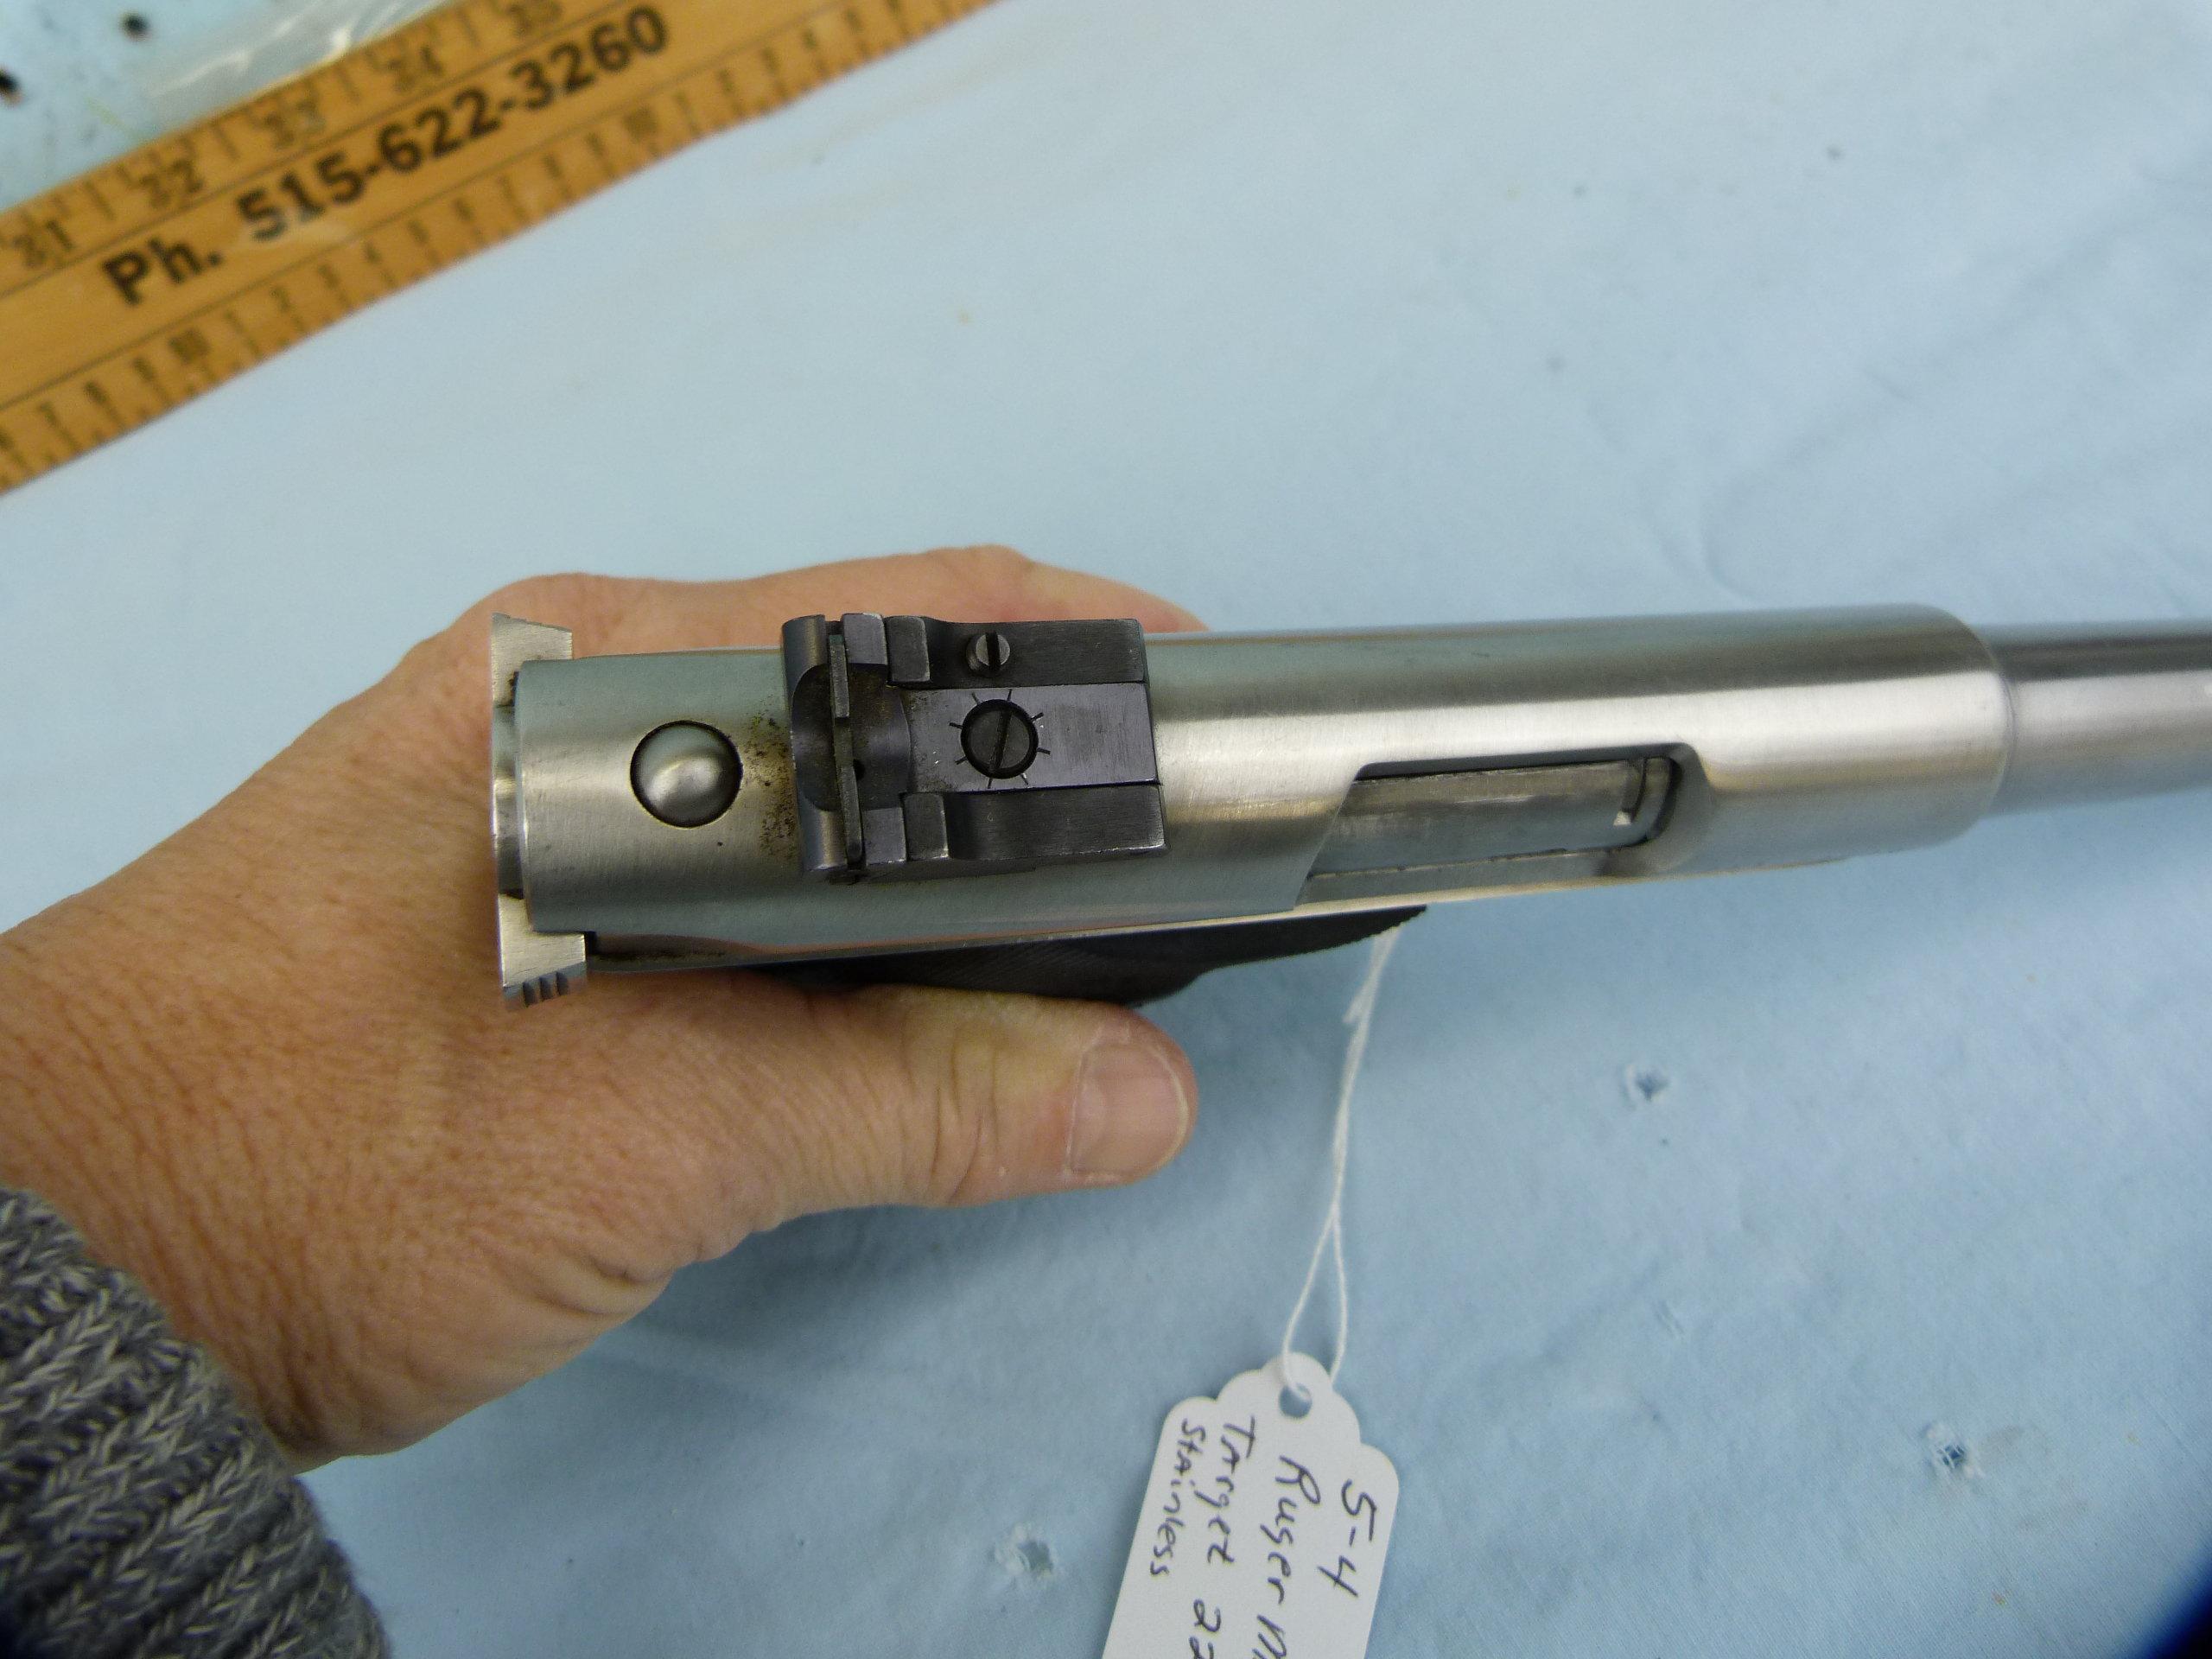 Ruger Mark II Target SA Pistol, .22 LR, SN: 211-21609